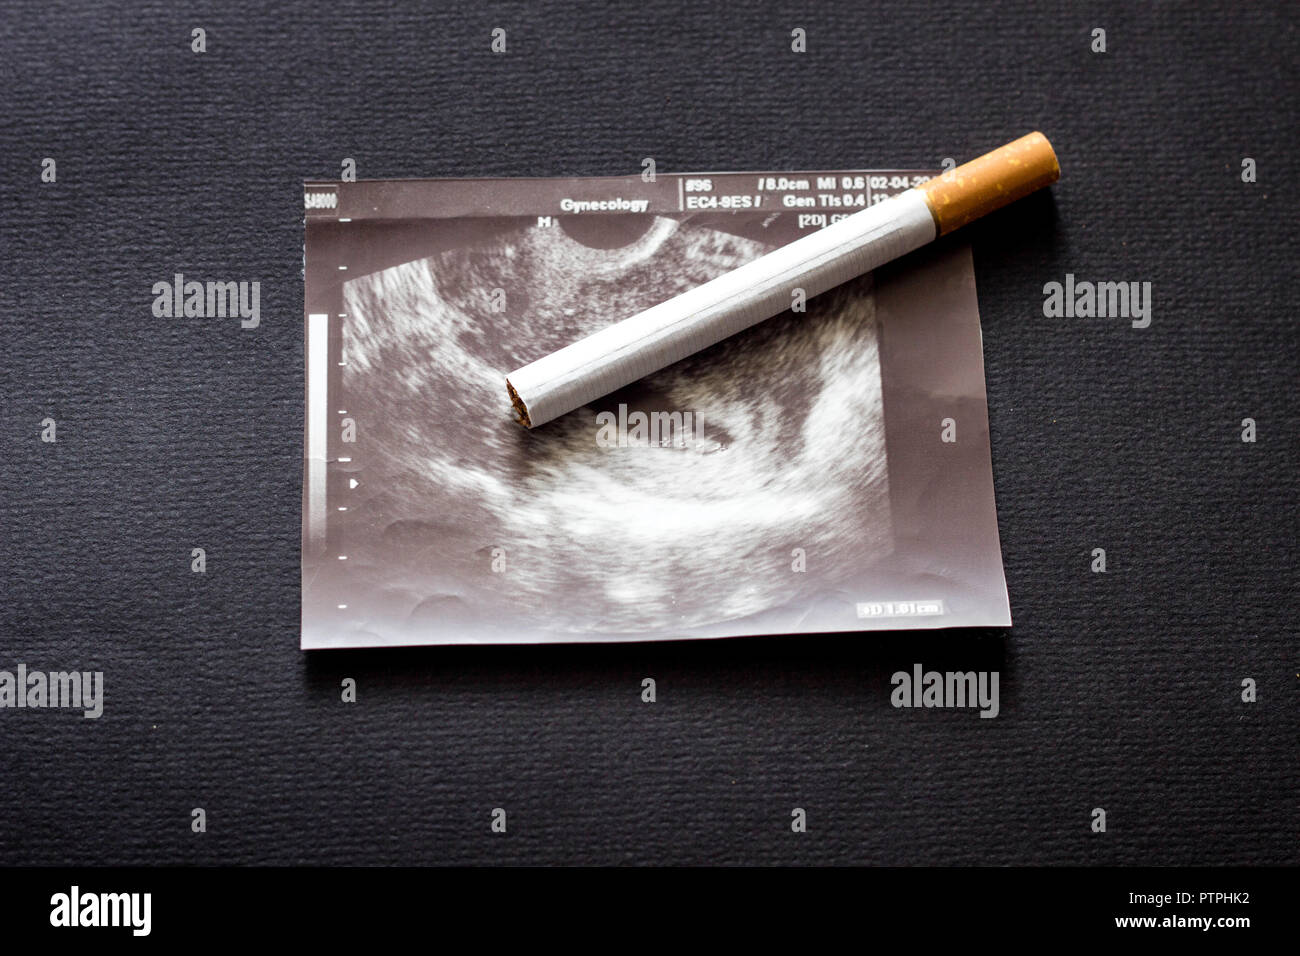 Tag zigarette am schwanger 1 Entzugserscheinungen beim